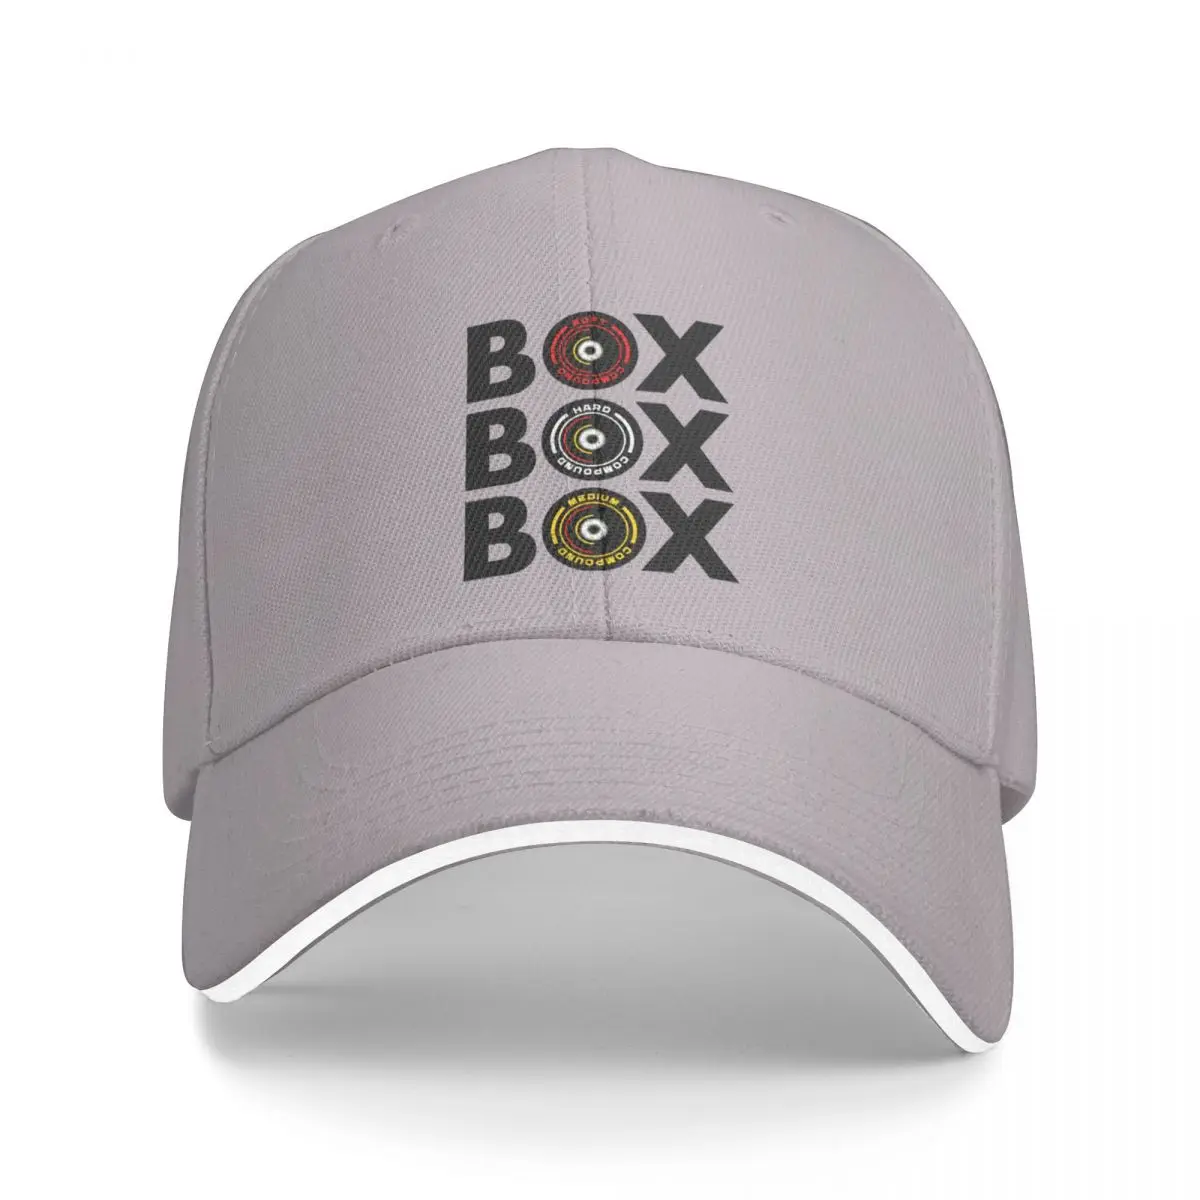 Box Box Box Инфографика F1 Дизайн шинного компаунда бейсболка для гольфа шляпы для женщин Мужские